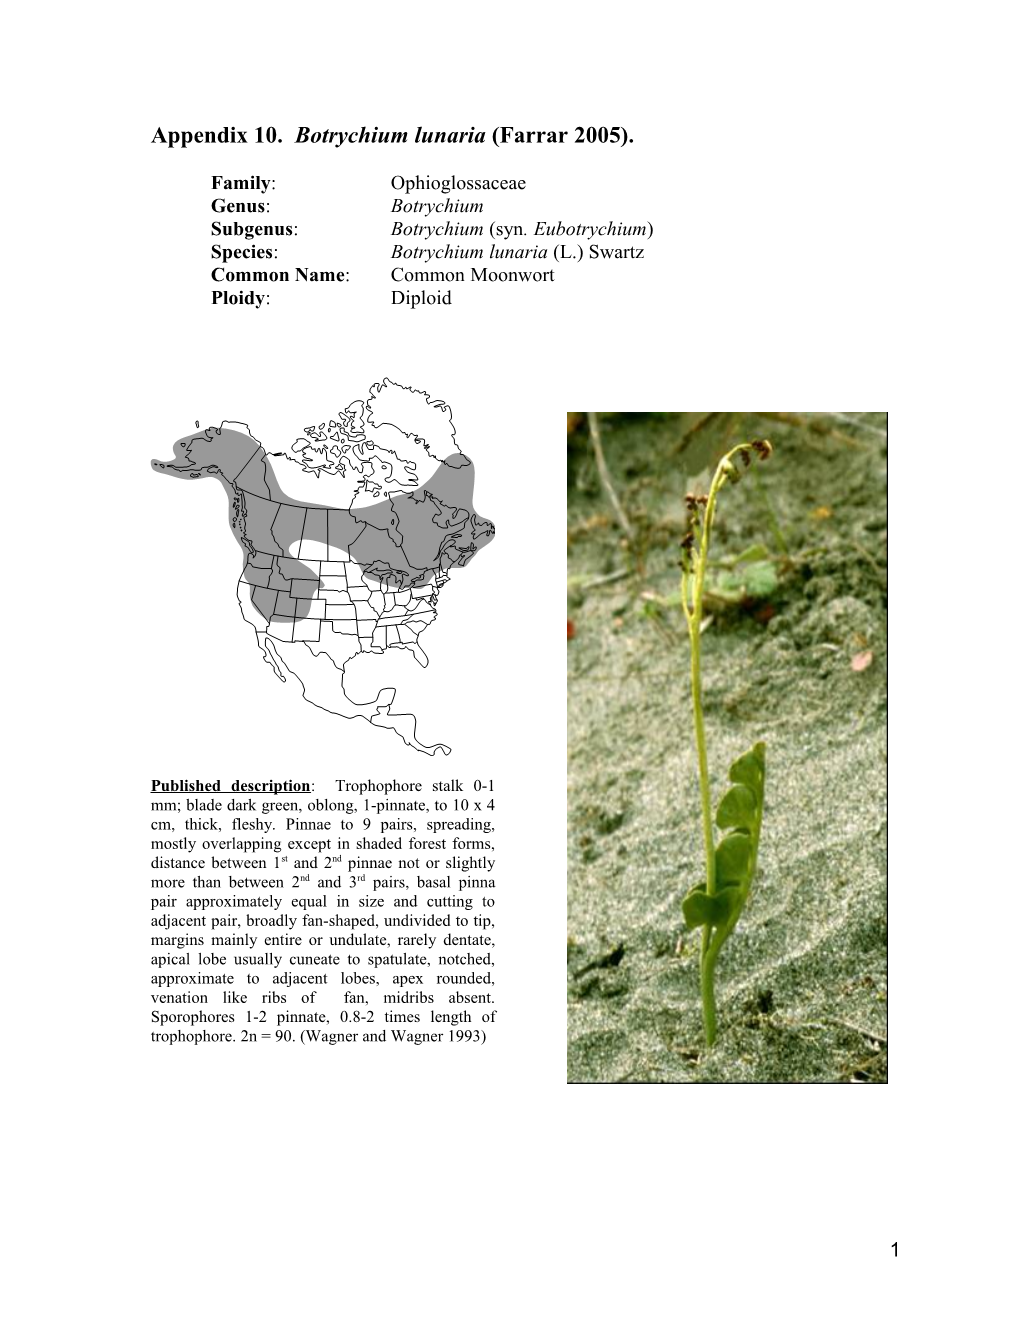 Appendix 10. Botrychiumlunaria(Farrar 2005)